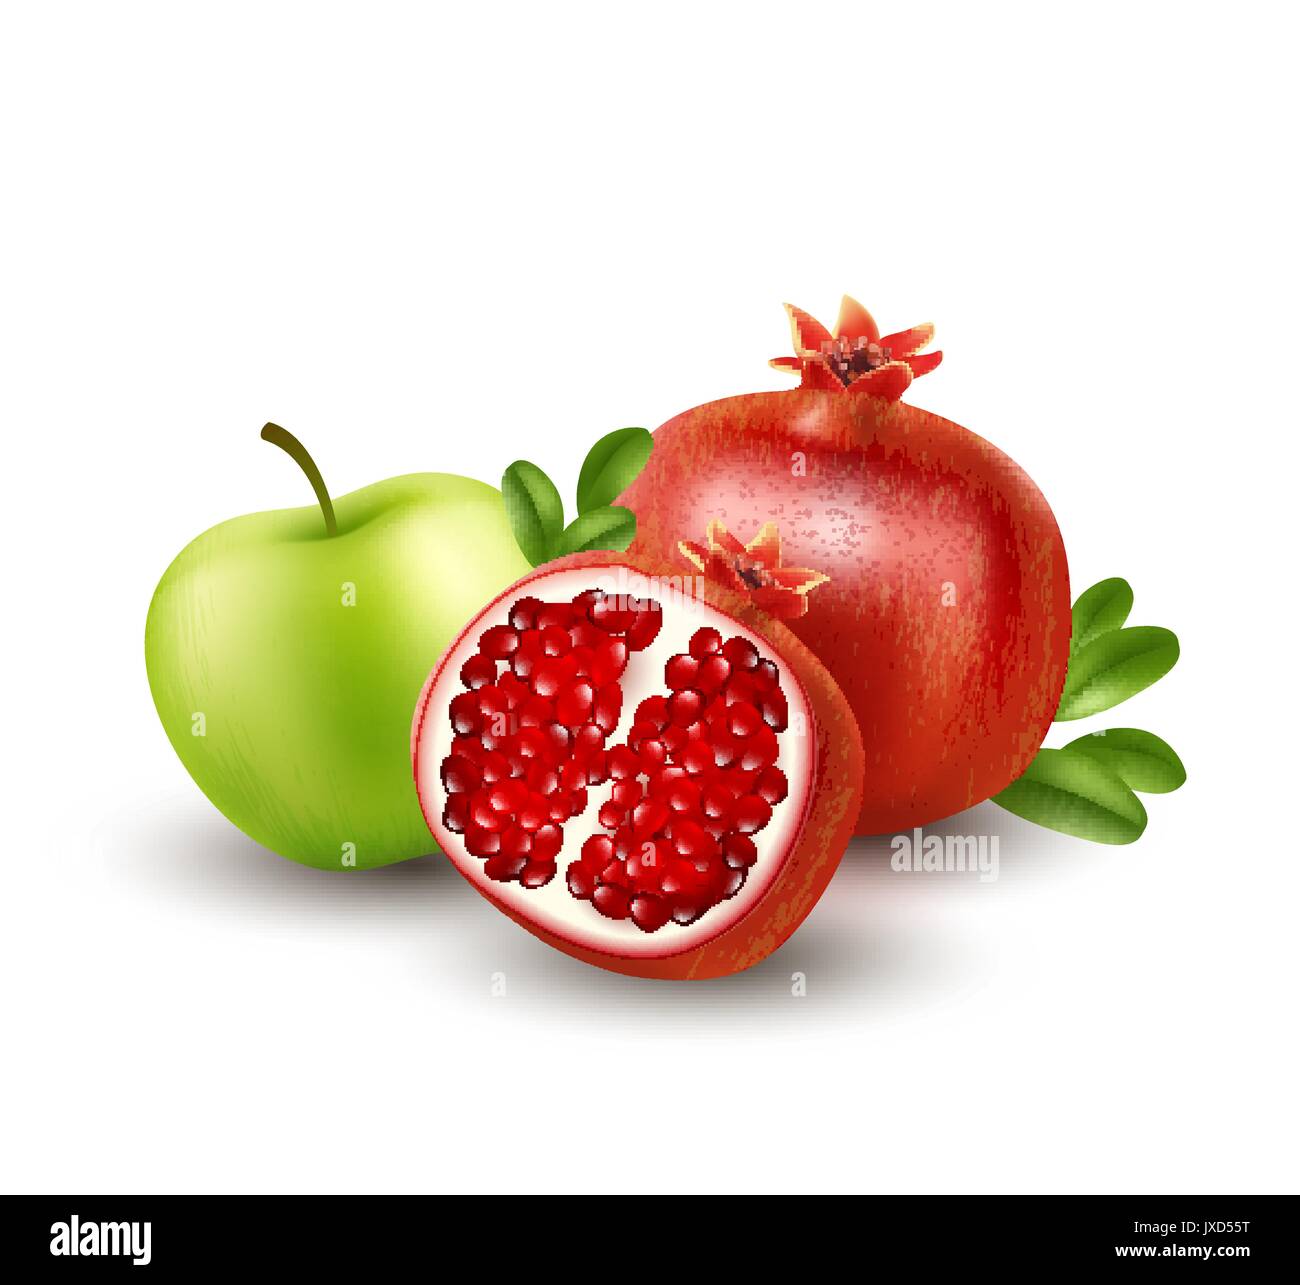 Realistische Granatapfel oder Garnet auf dem weißen Hintergrund. Vector Illustration Stock Vektor